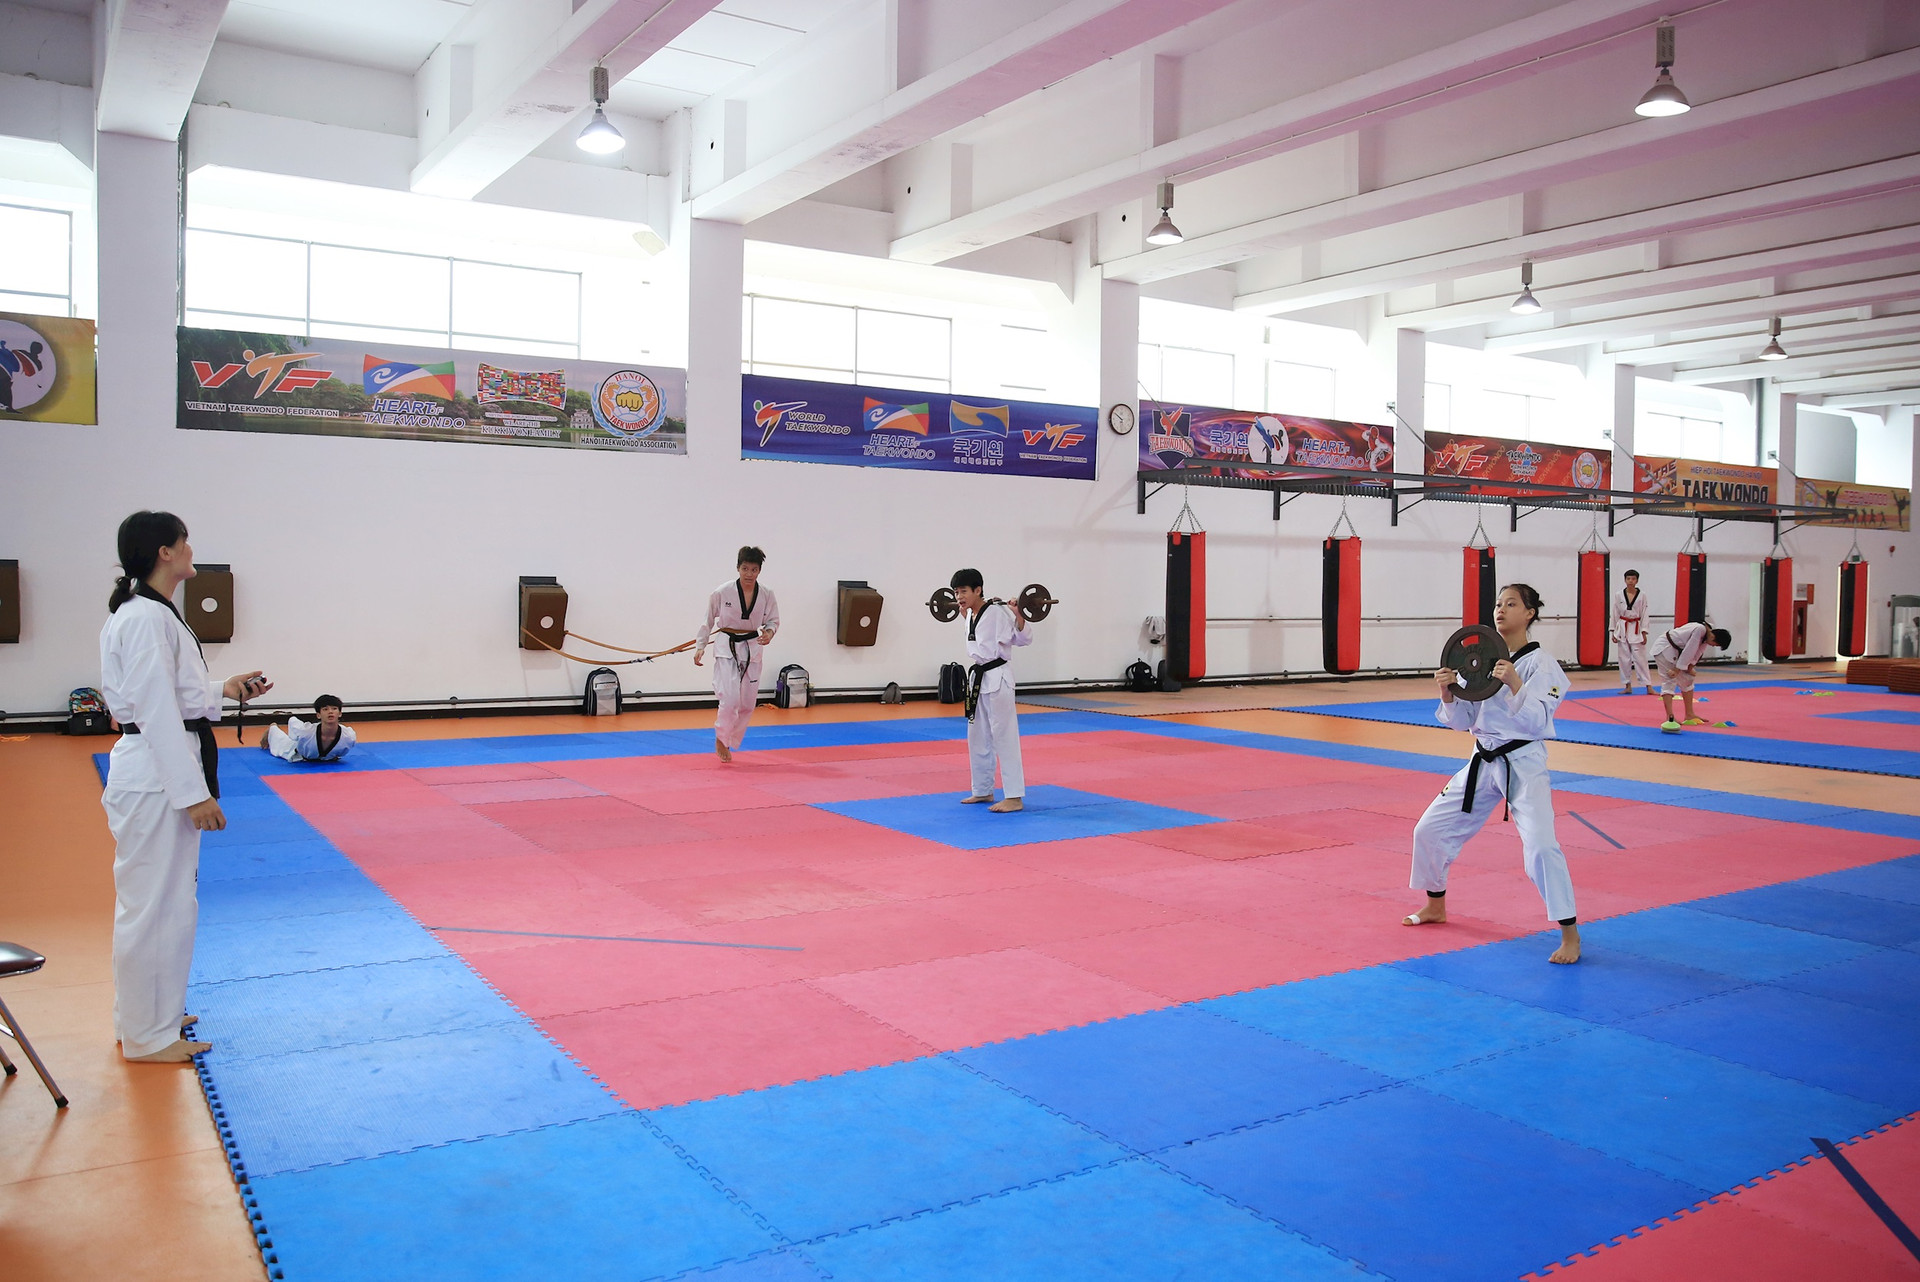 taekwondo-la-mot-trong-nhung-mon-duoc-nganh-the-thao-ha-noi-dau-tu-manh-trong-thoi-gian-toi-de-huong-den-san-choi-asiad-va-olympic.-anh-nguyen-quang.jpg